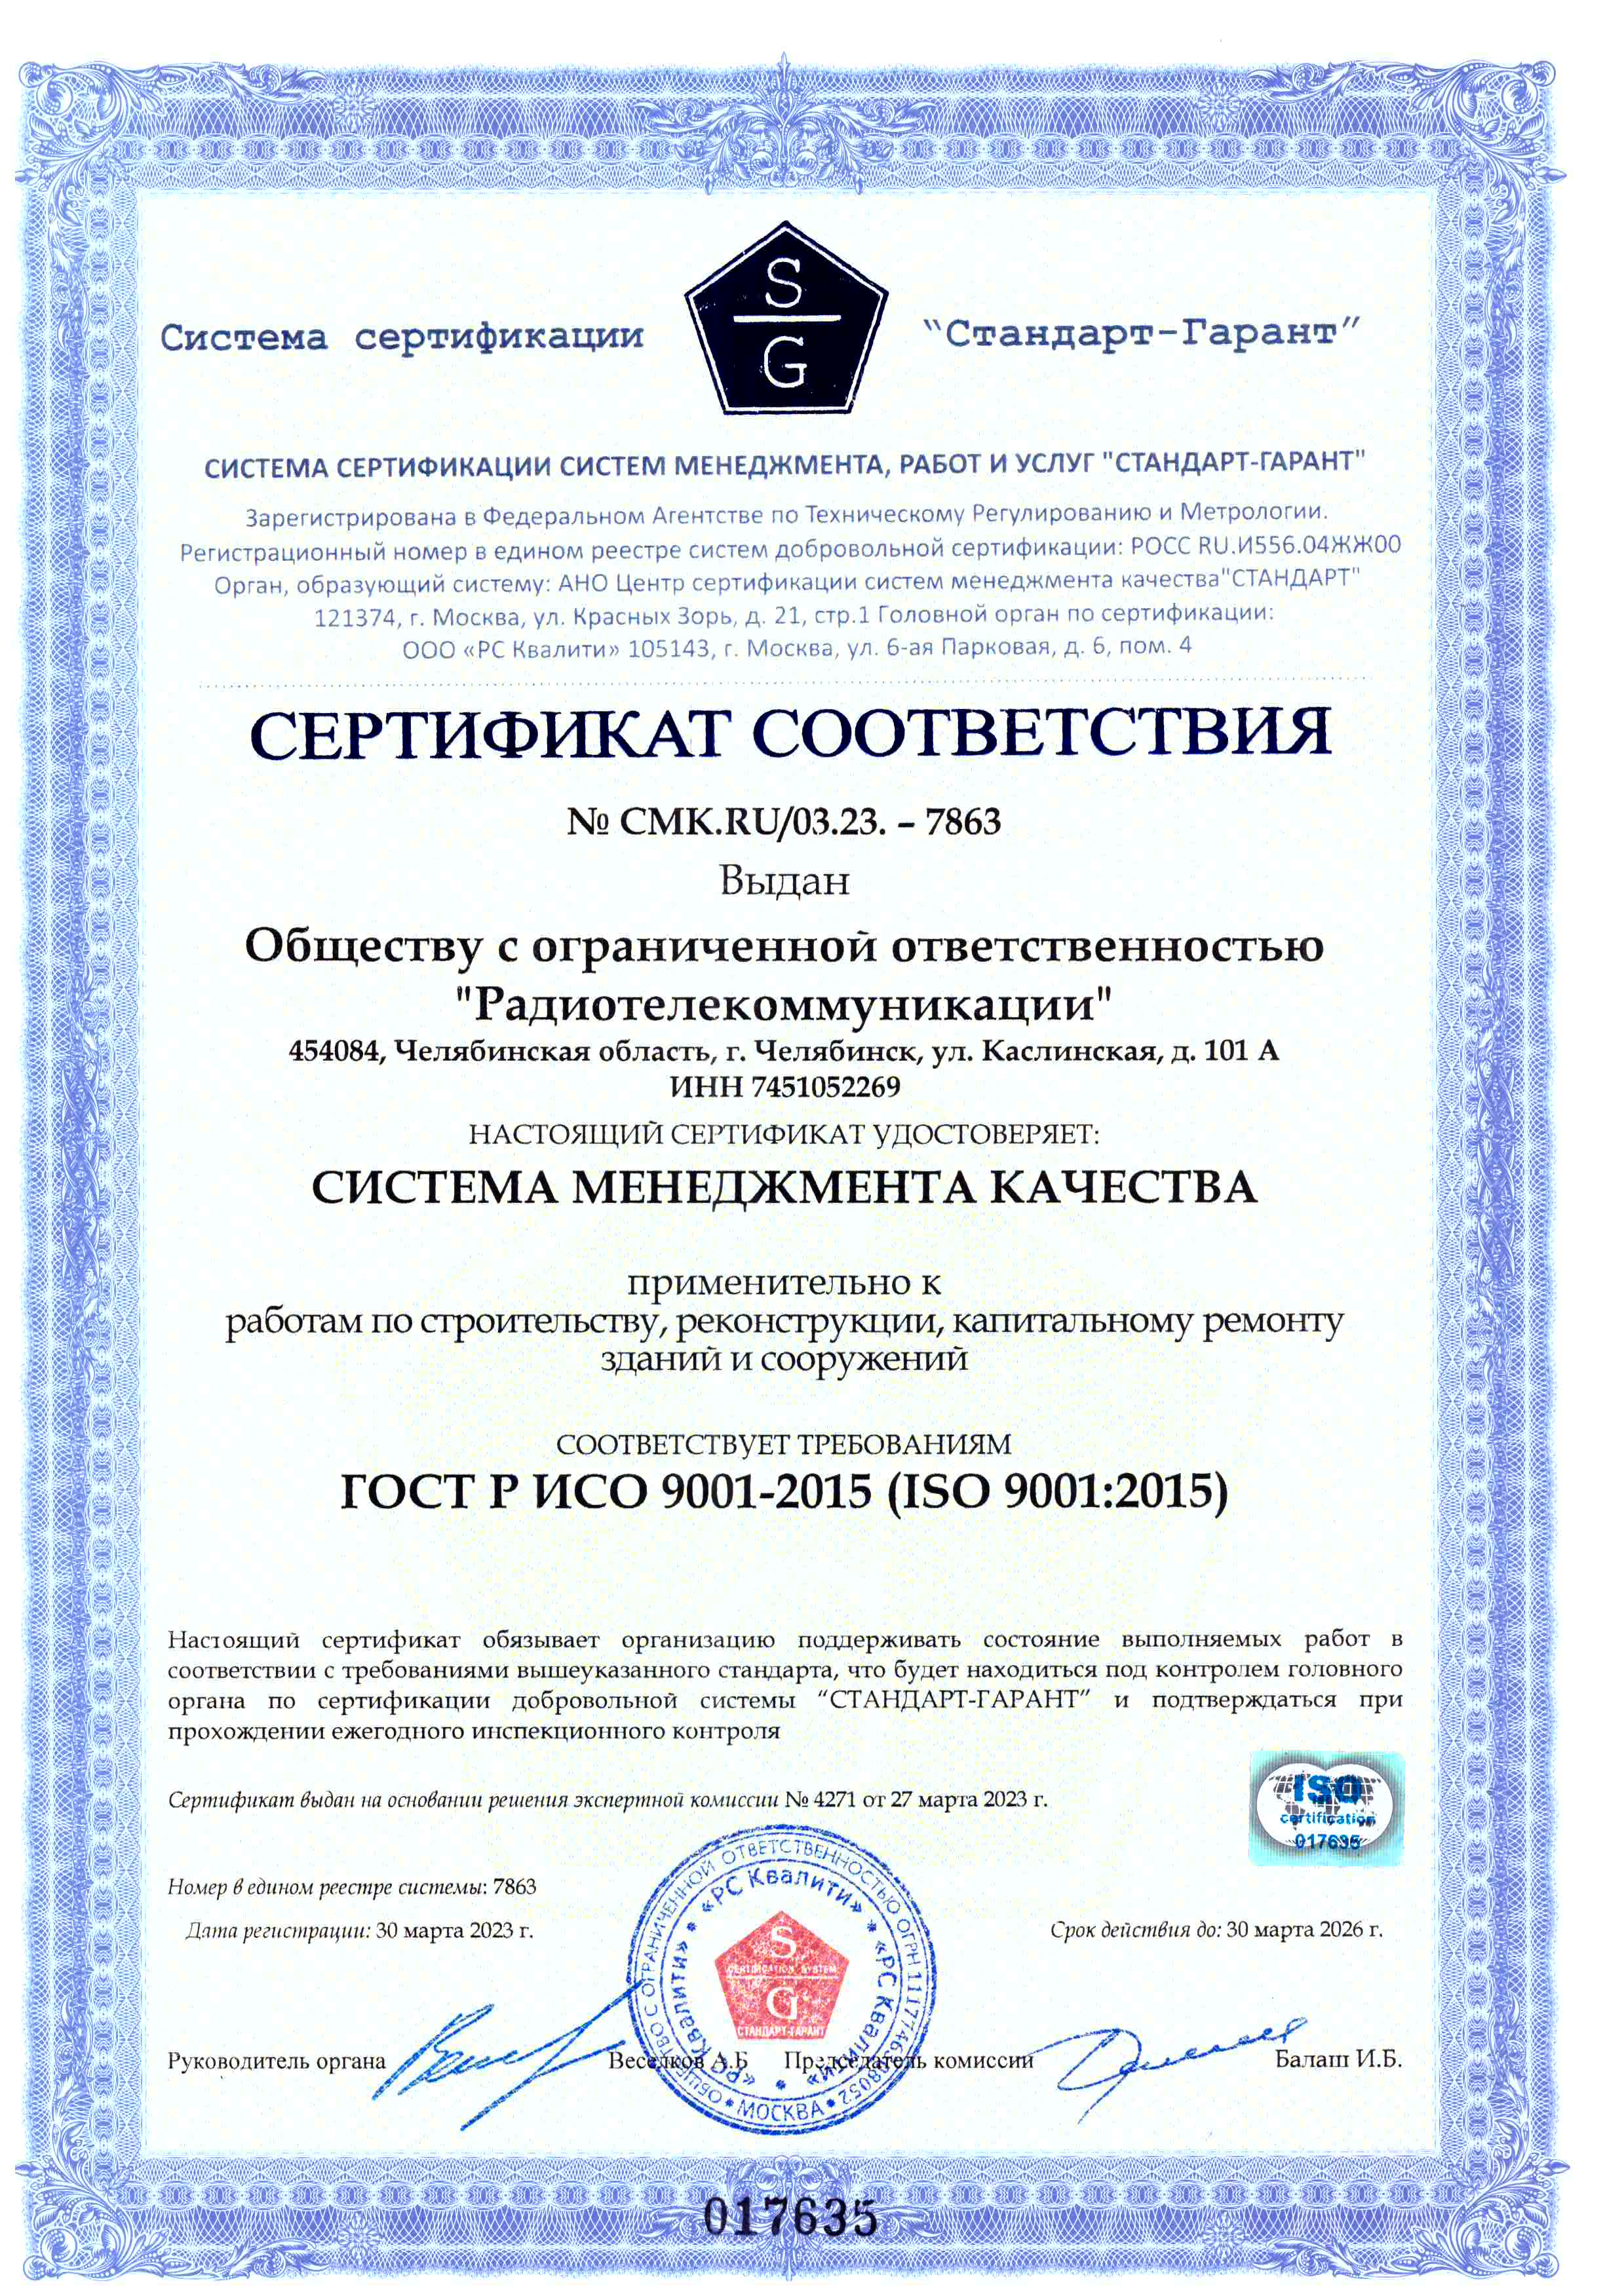 Сертификат ИСО-9001-2015 Система менеджмента качества, работ и услуг